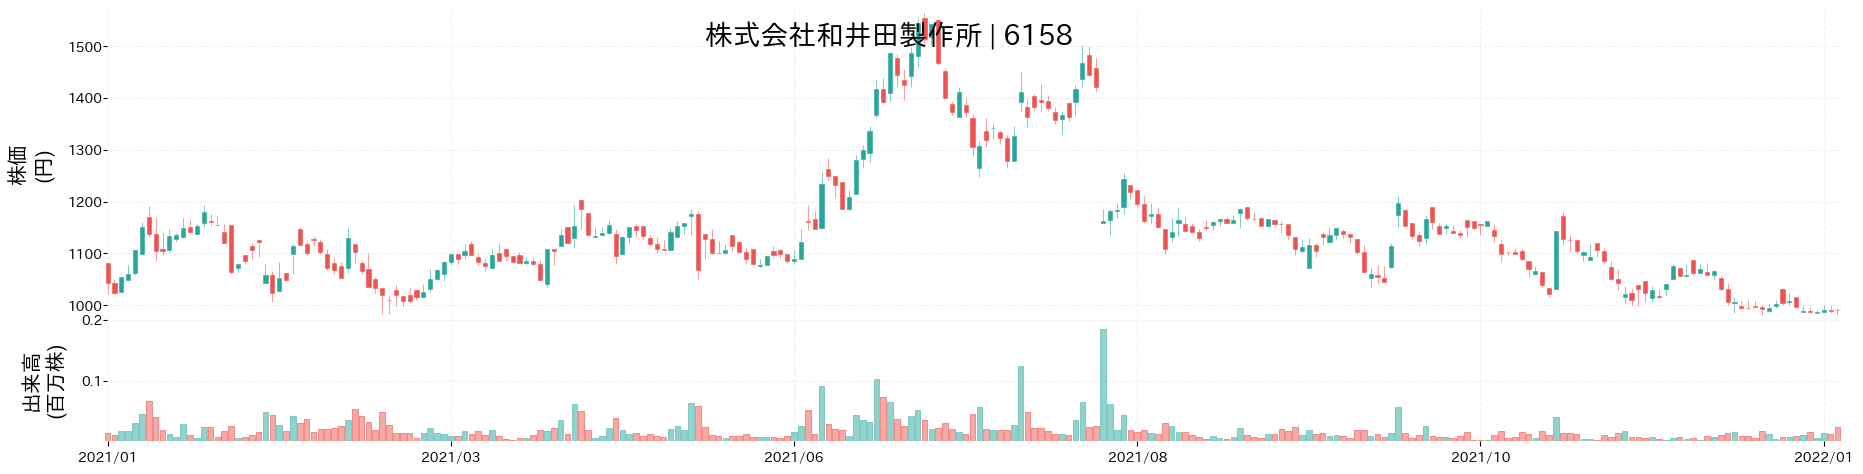 和井田製作所の株価推移(2021)